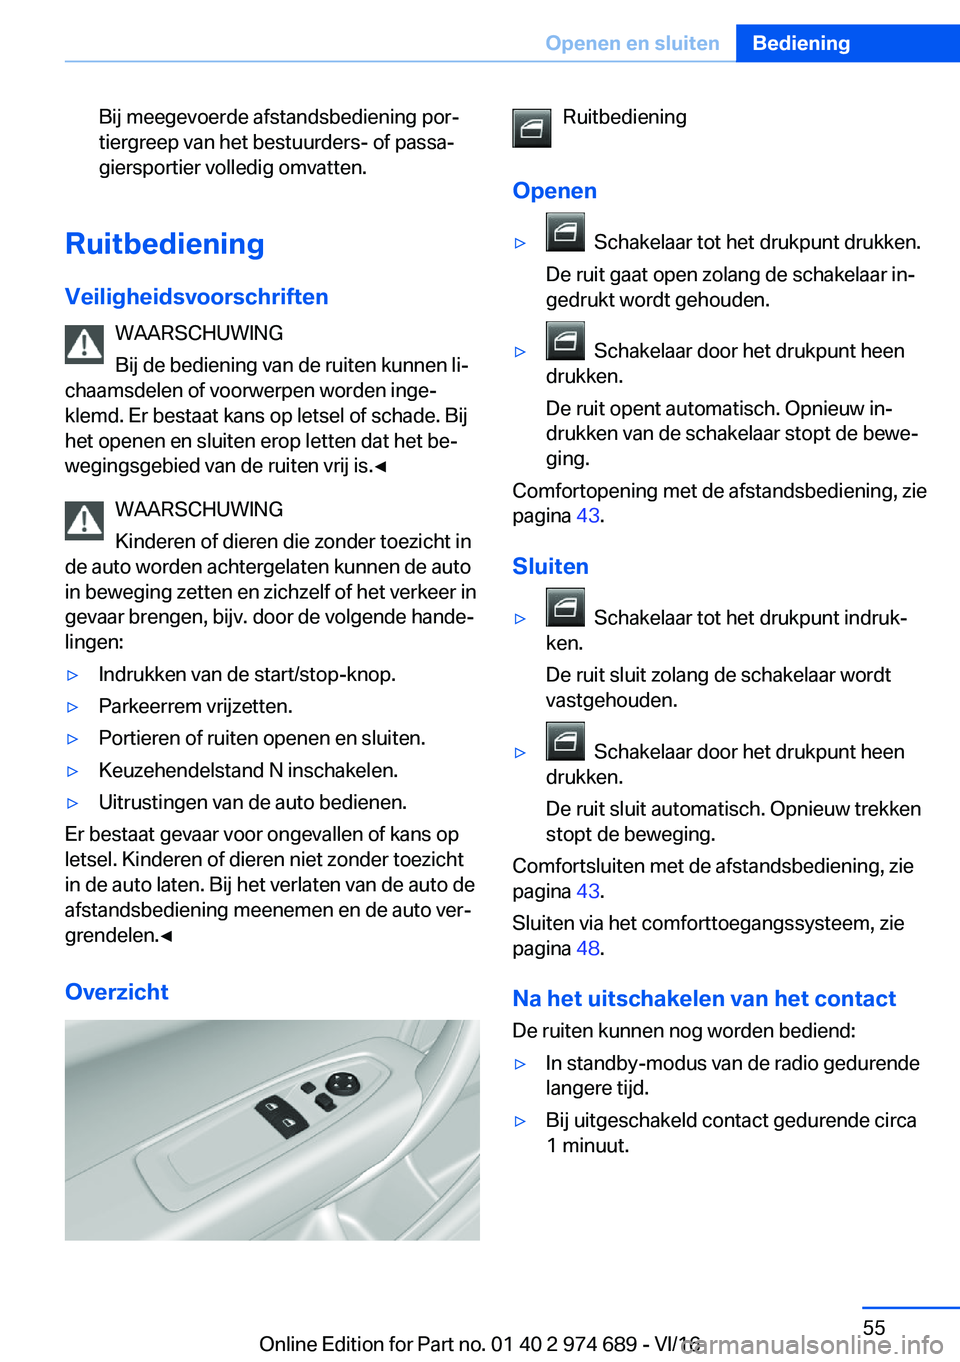 BMW M2 2017  Instructieboekjes (in Dutch) �B�i�j� �m�e�e�g�e�v�o�e�r�d�e� �a�f�s�t�a�n�d�s�b�e�d�i�e�n�i�n�g� �p�o�rj
�t�i�e�r�g�r�e�e�p� �v�a�n� �h�e�t� �b�e�s�t�u�u�r�d�e�r�s�-� �o�f� �p�a�s�s�aj
�g�i�e�r�s�p�o�r�t�i�e�r� �v�o�l�l�e�d�i�g